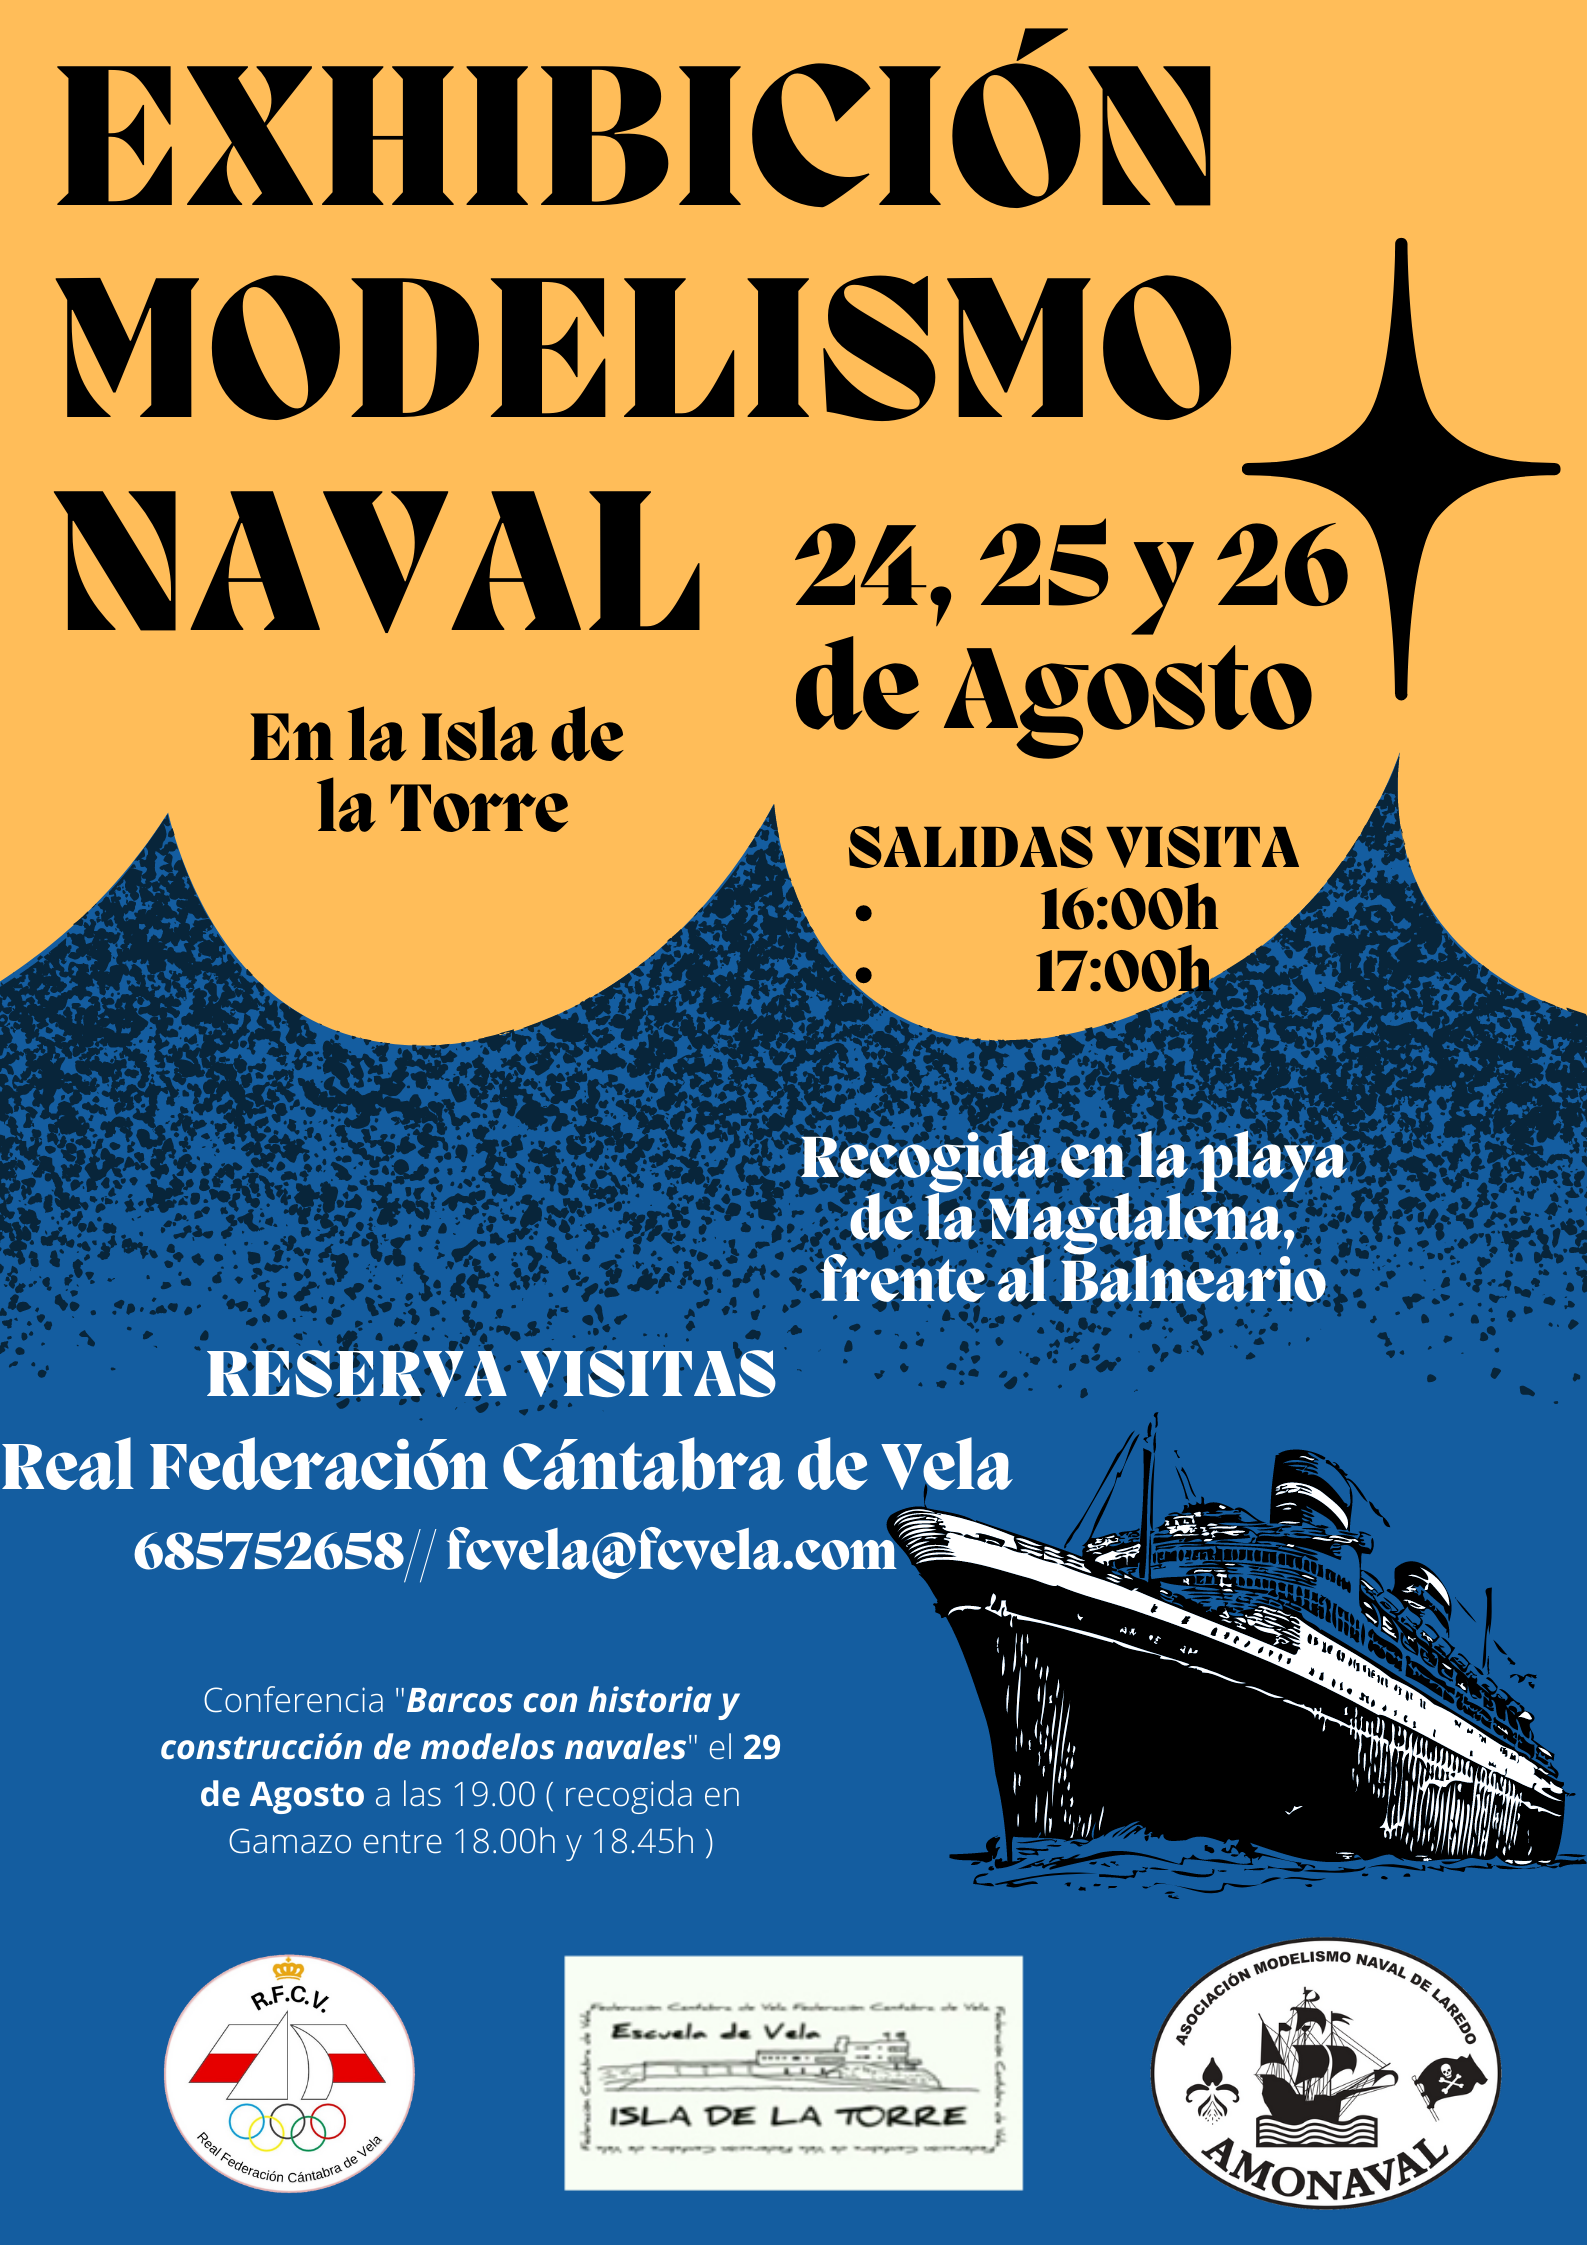 fascismo por favor no lo hagas Derivación Exhibición de modelismo naval - Santander Creativa